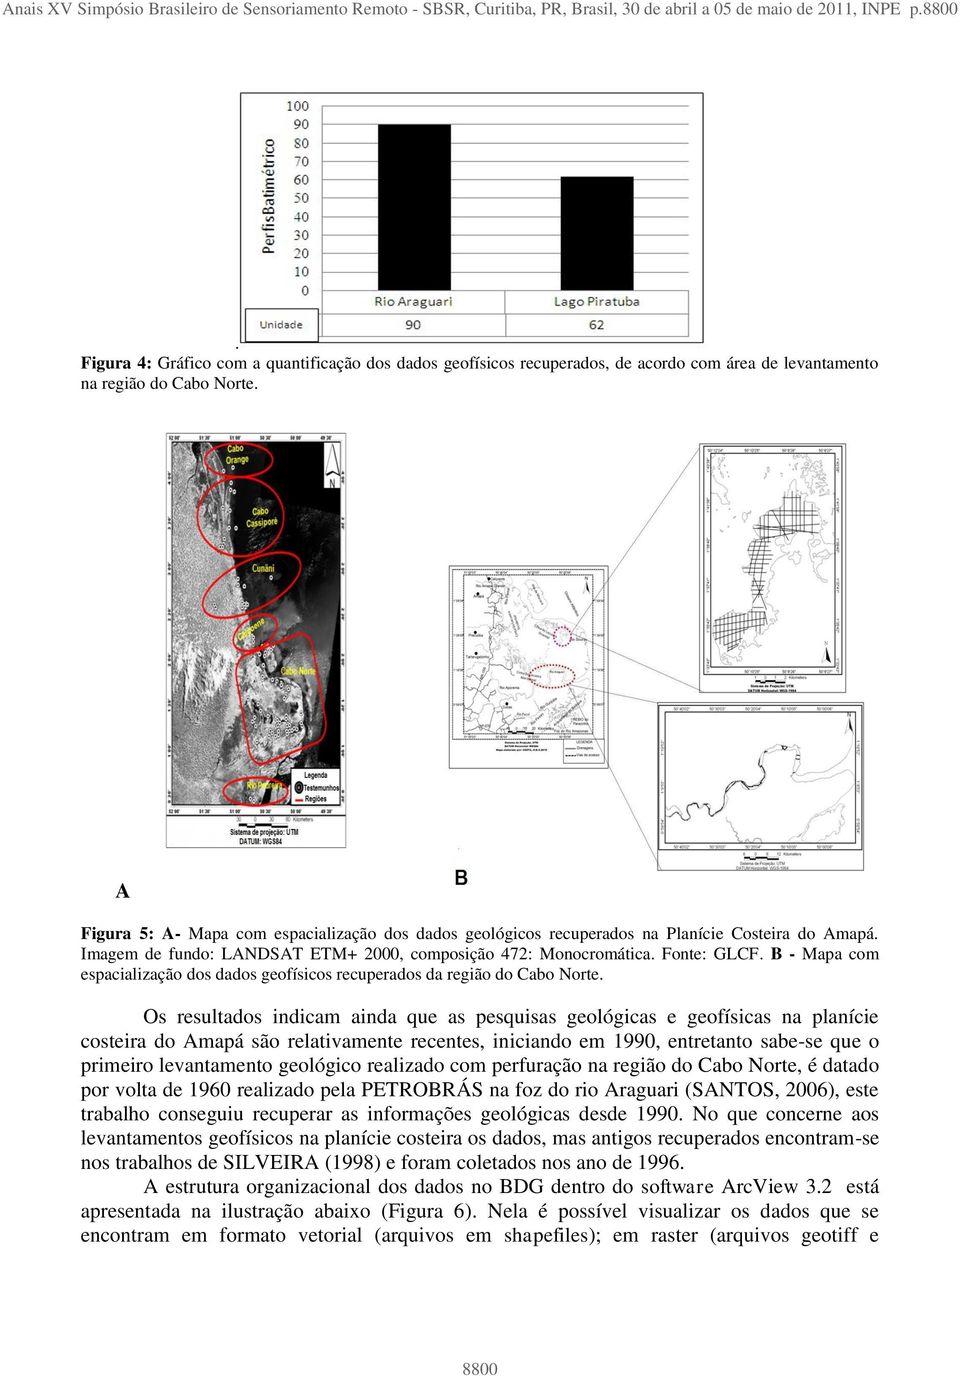 A Figura 5: A- Mapa com espacialização dos dados geológicos recuperados na Planície Costeira do Amapá. Imagem de fundo: LANDSAT ETM+ 2000, composição 472: Monocromática. Fonte: GLCF.